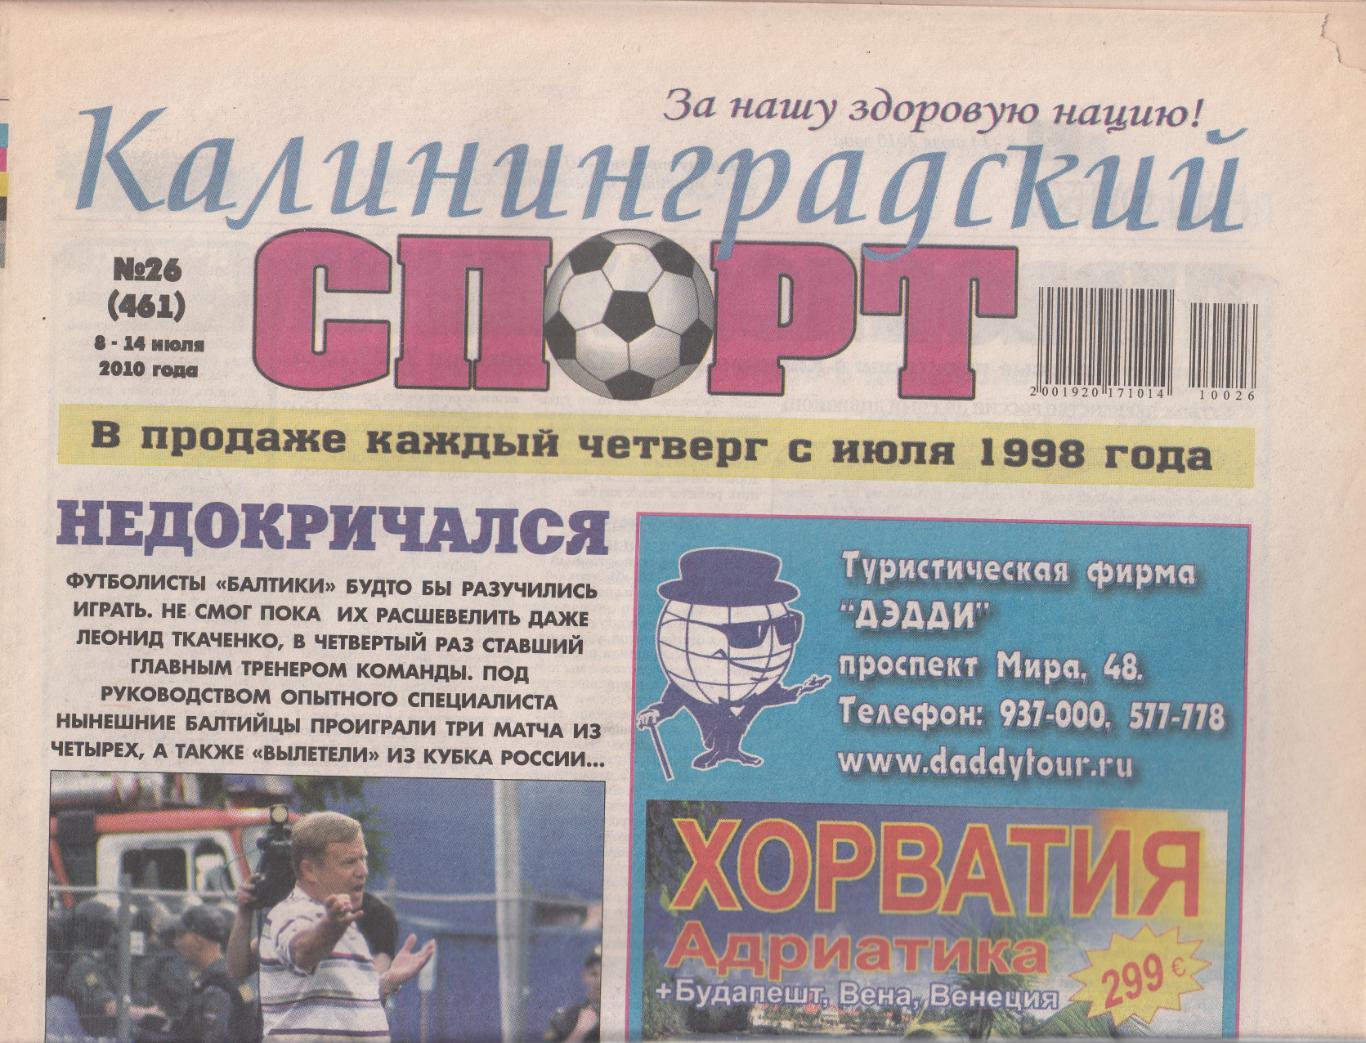 Калининградский спорт № 26 2010 2 обзора матчей Балтики ( см. описание)